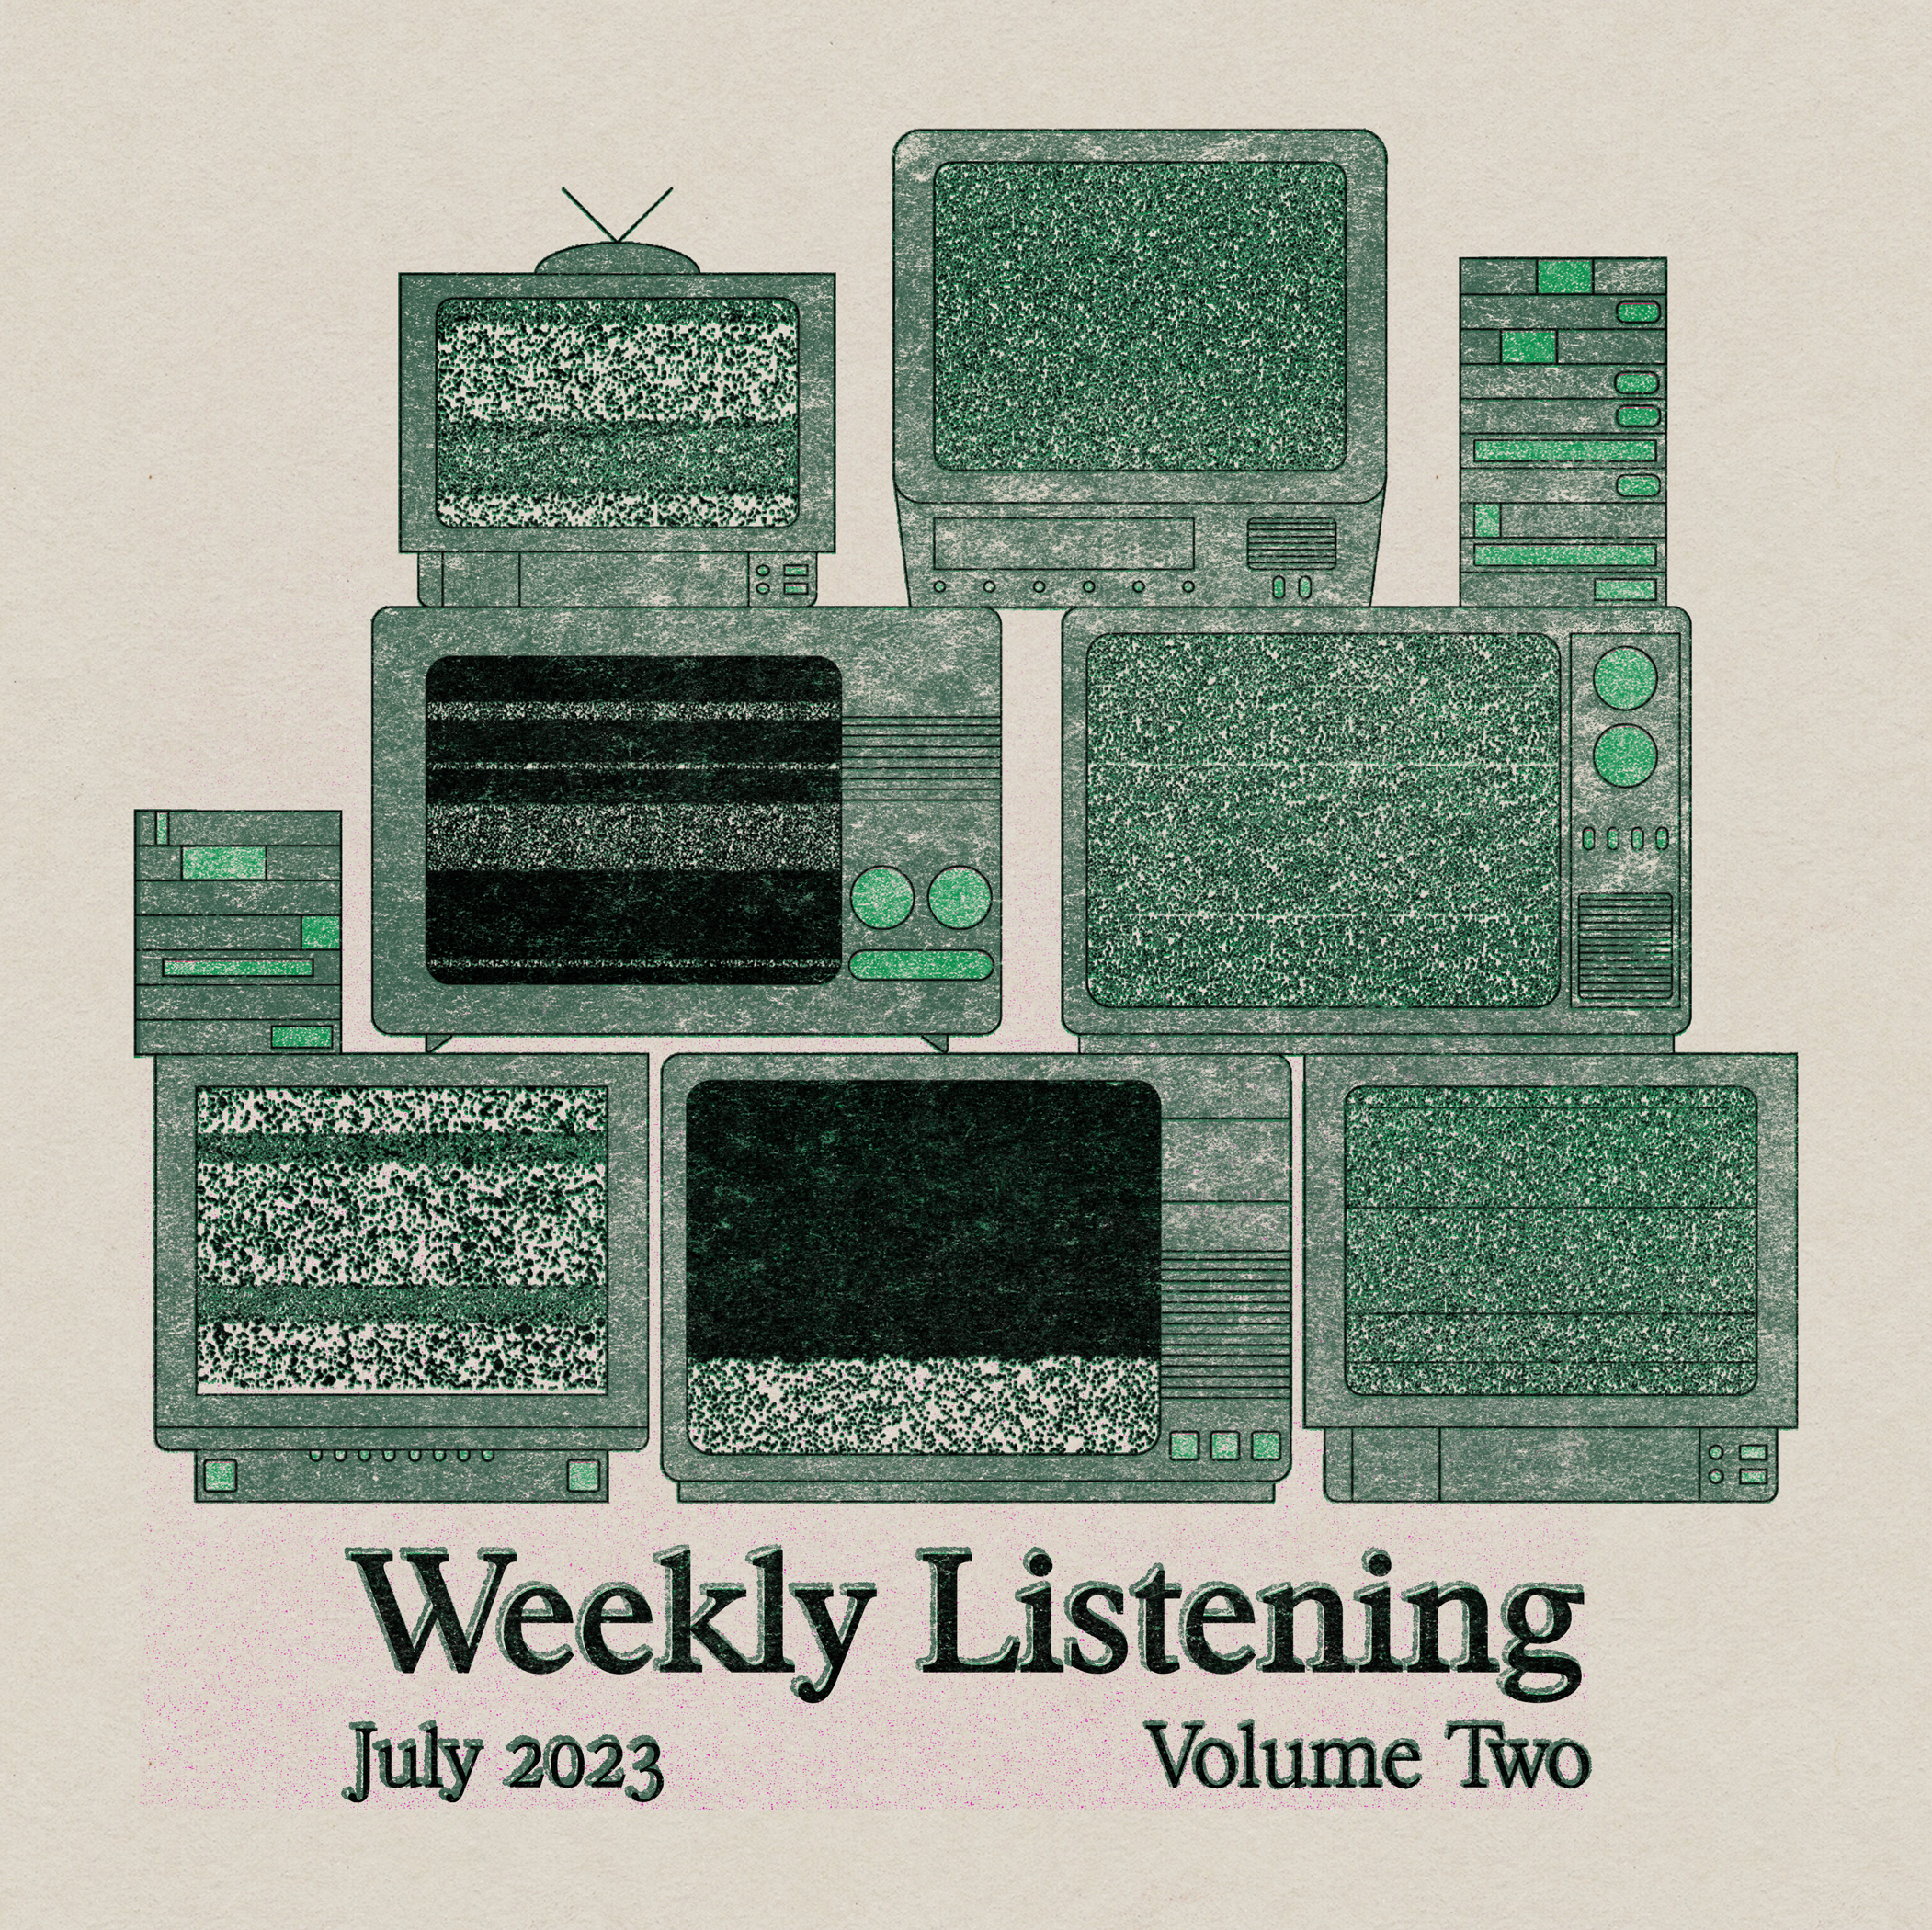 weekly listening july 2023 volume 2